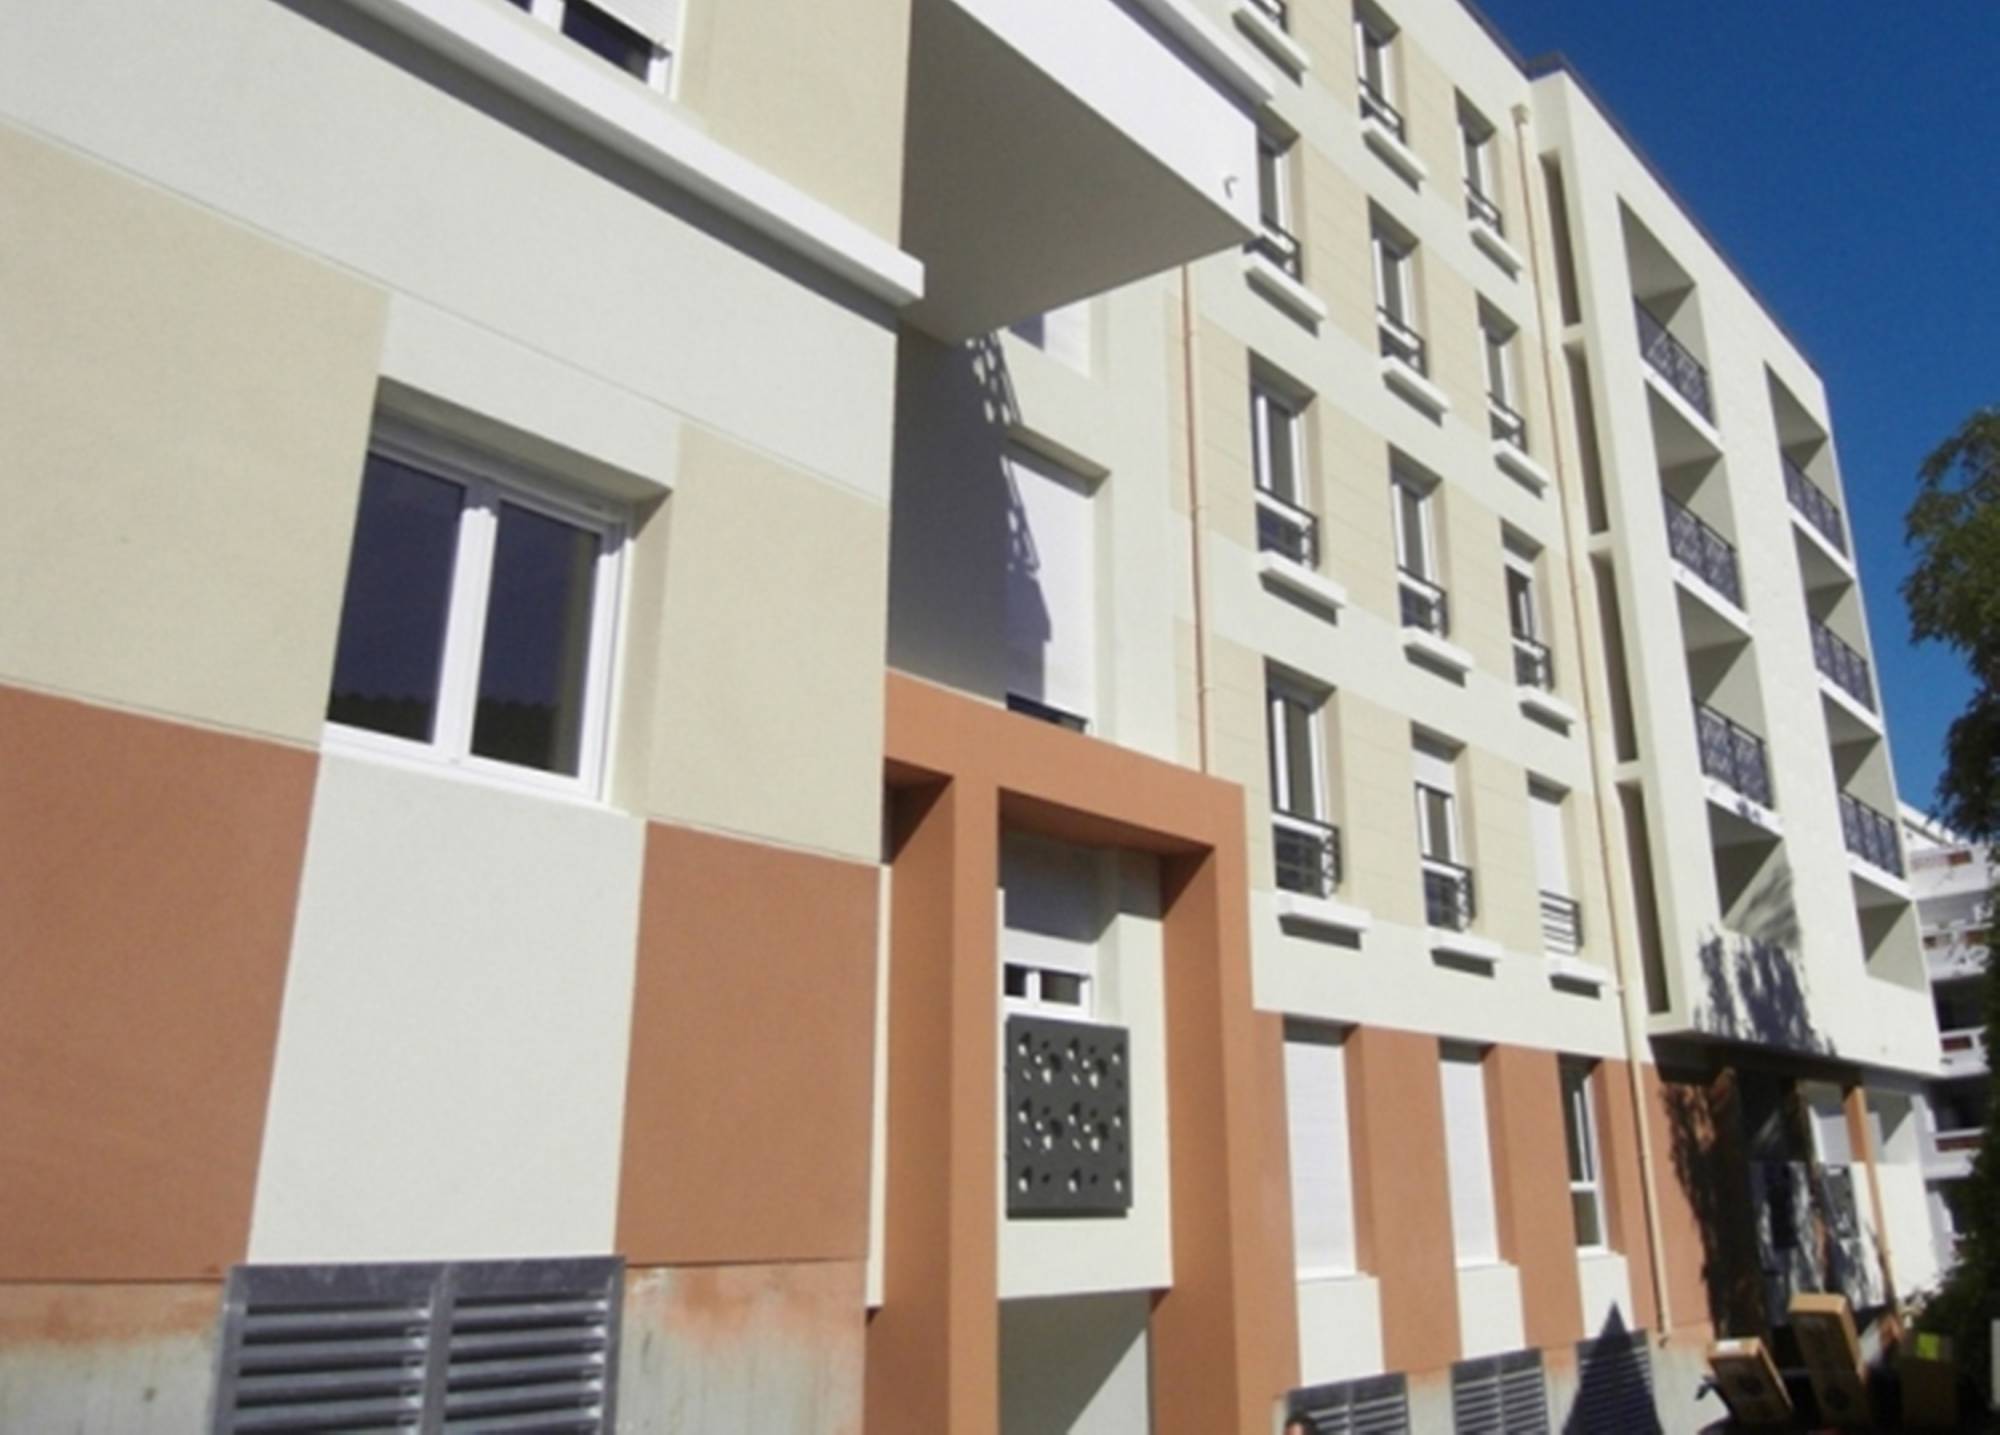 A louer appartement 2 pièces avec terrasse et place de parking privative quartier Longchamp 13004 Marseille